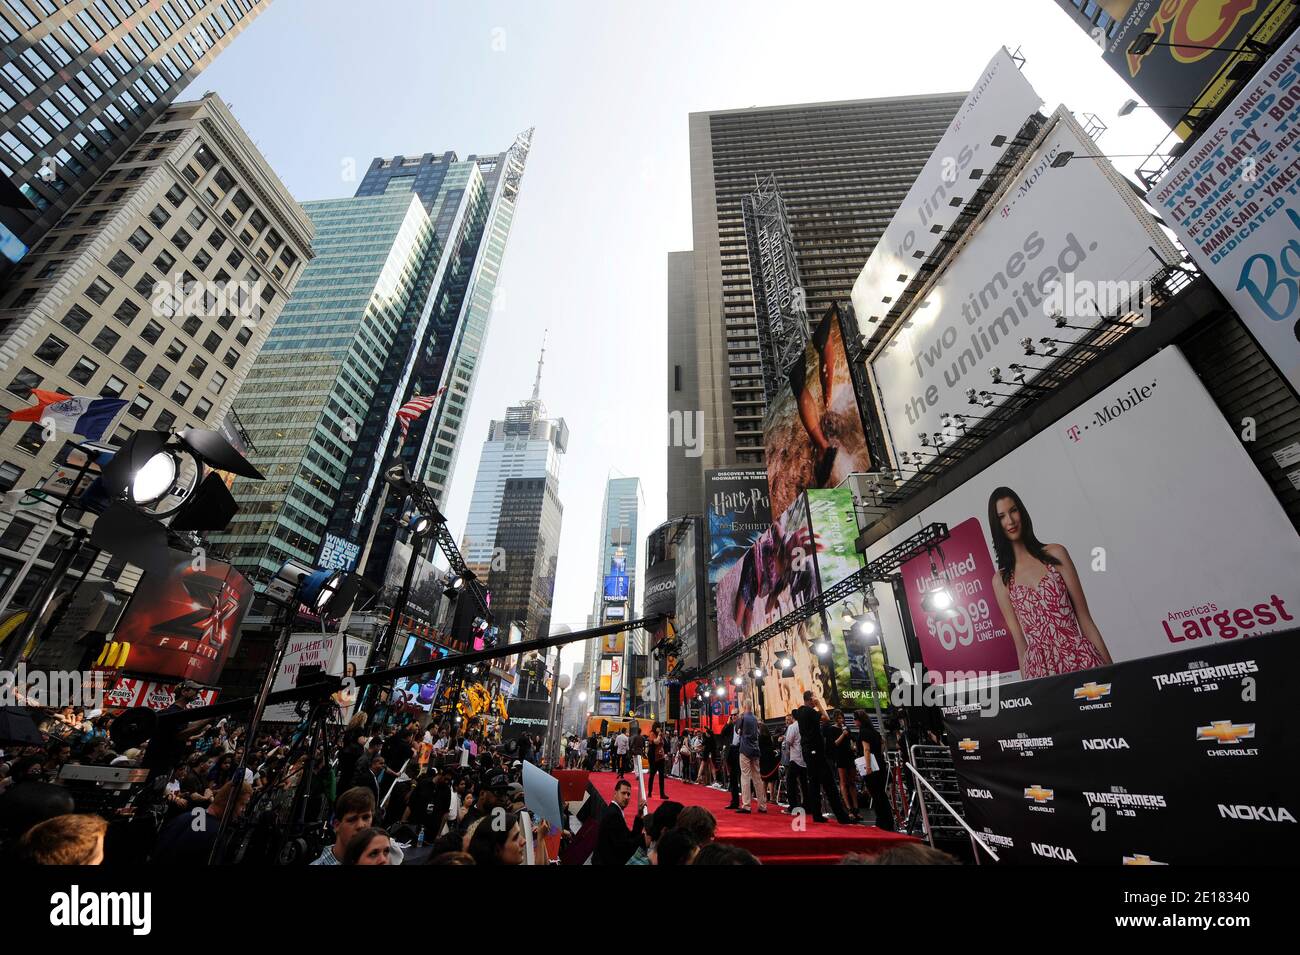 Eine Illustration der Premiere von 'Transformers: Dark Side of the Moon' am 28. Juni 2011 auf dem Times Square in New York City, NY, USA. Foto von Elizabeth Pantaleo/ABACAPRESS.COM Stockfoto